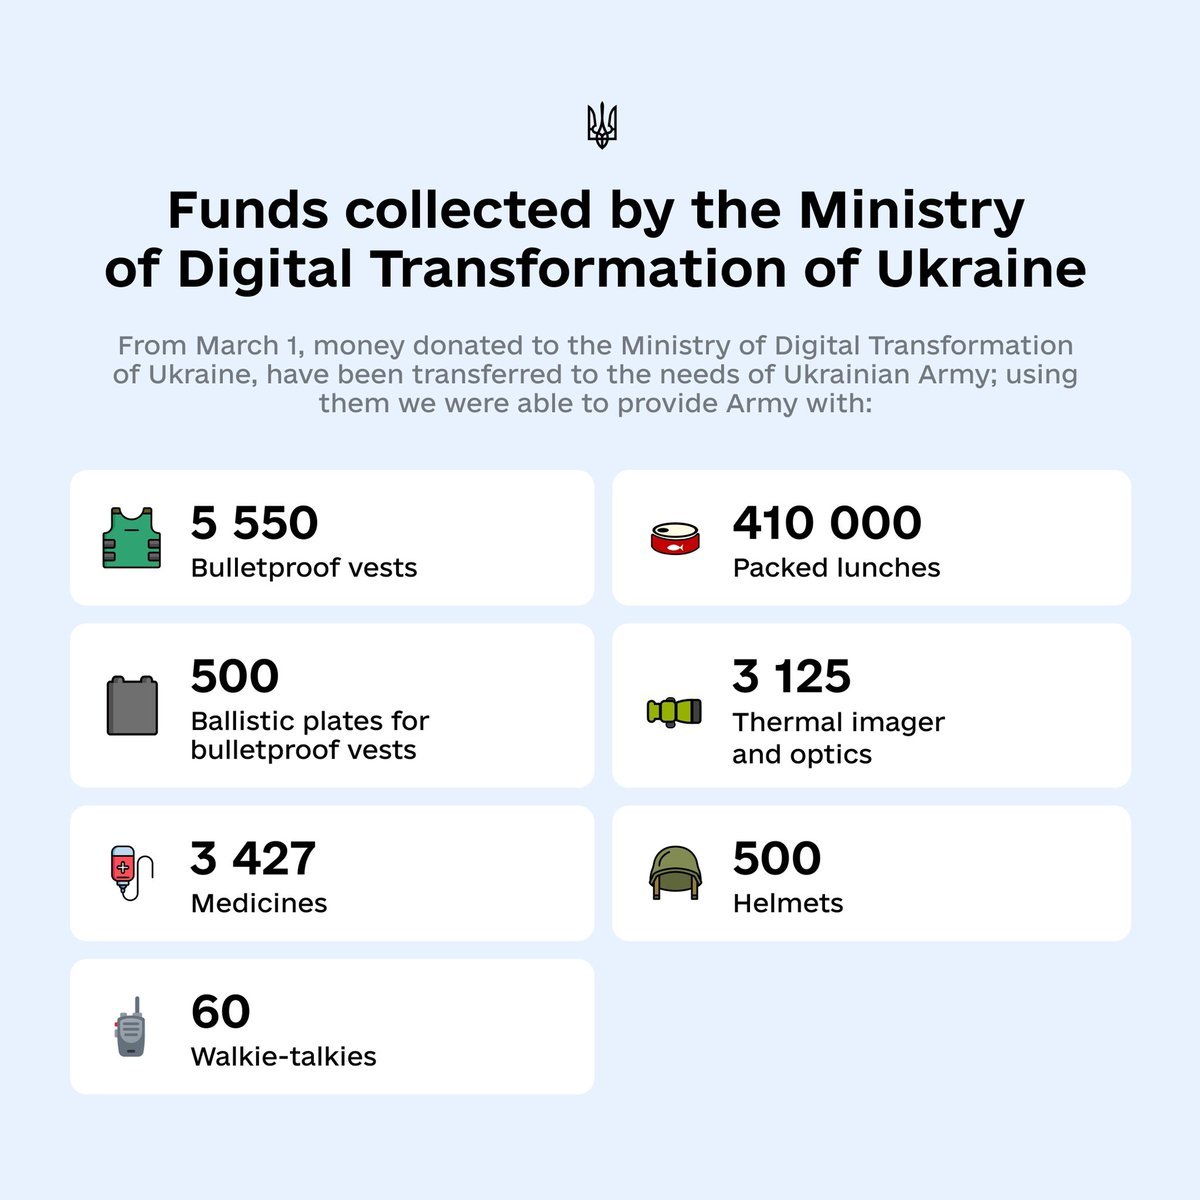 Le détail de l'utilisation des fonds collectés, selon le ministre ukrainien